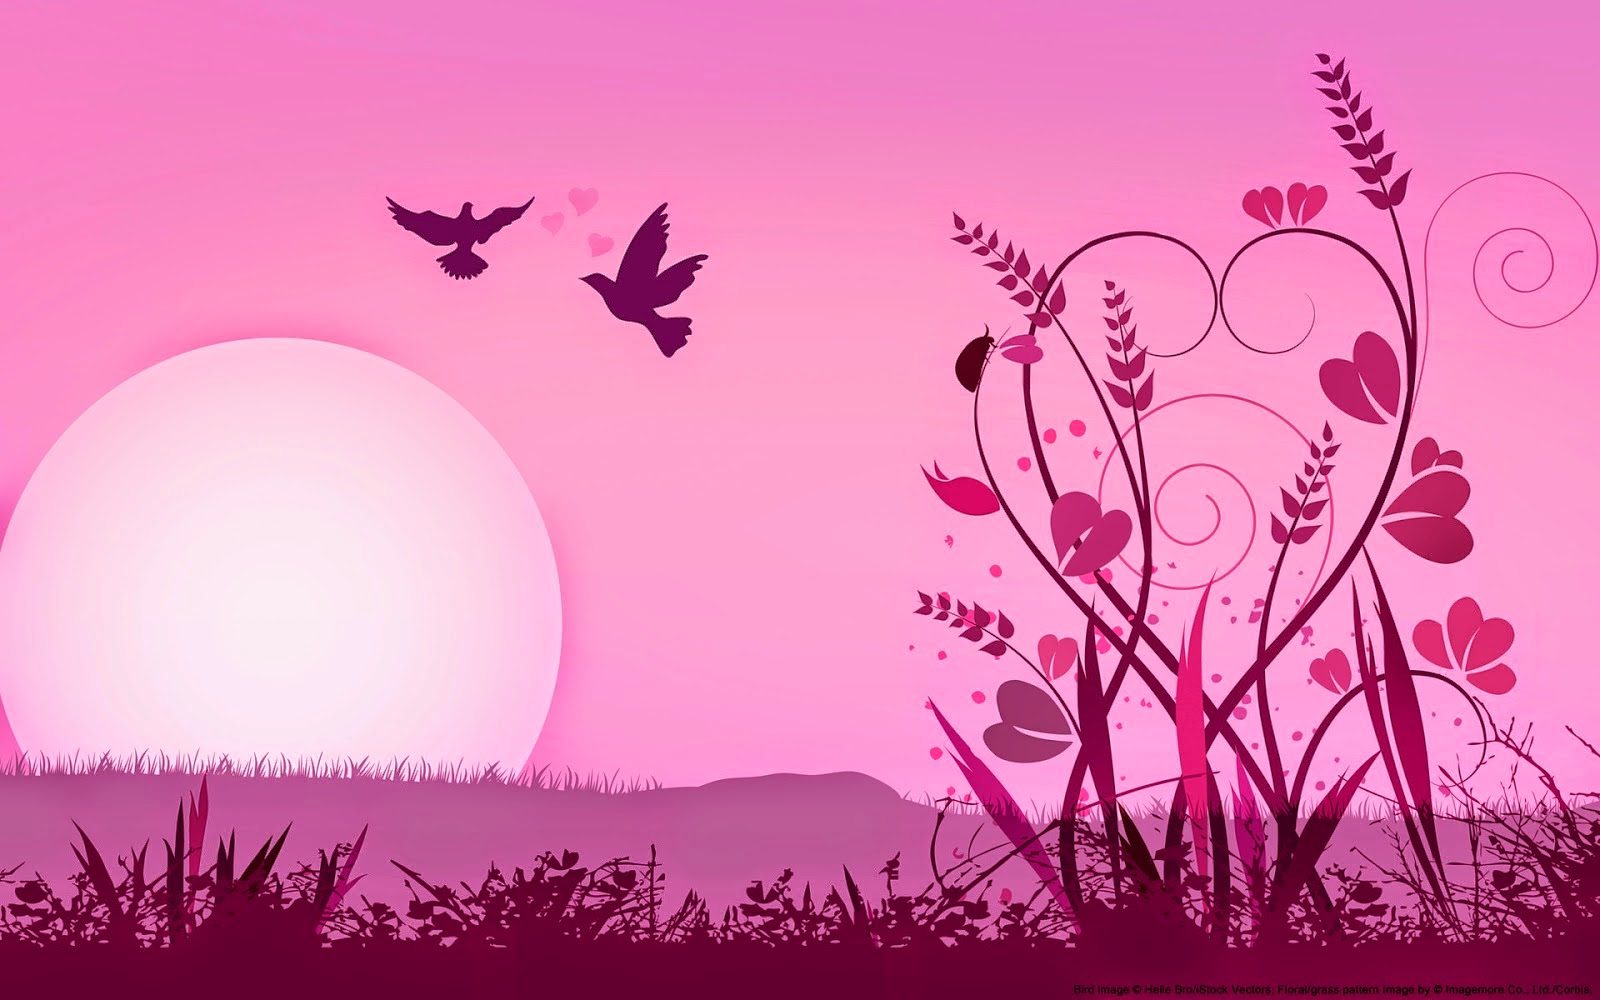 tapete feminino,rosa,himmel,liebe,grafikdesign,hintergrund